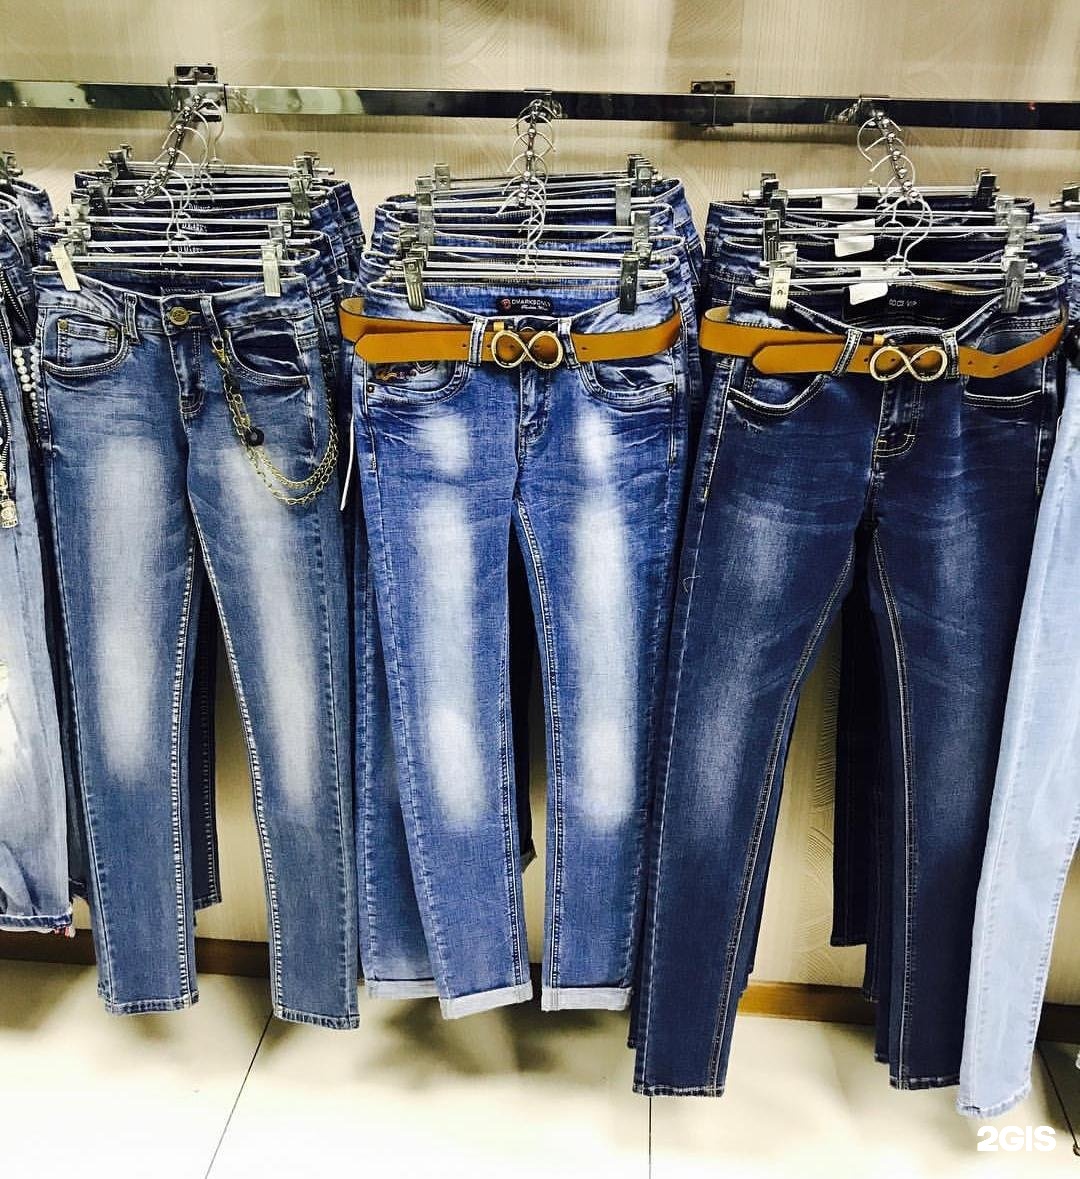 Магазин джинсовой одежды. Ассортимент джинсовой одежды. Магазины недорогой джинсовой одежды. Denim магазин одежды.